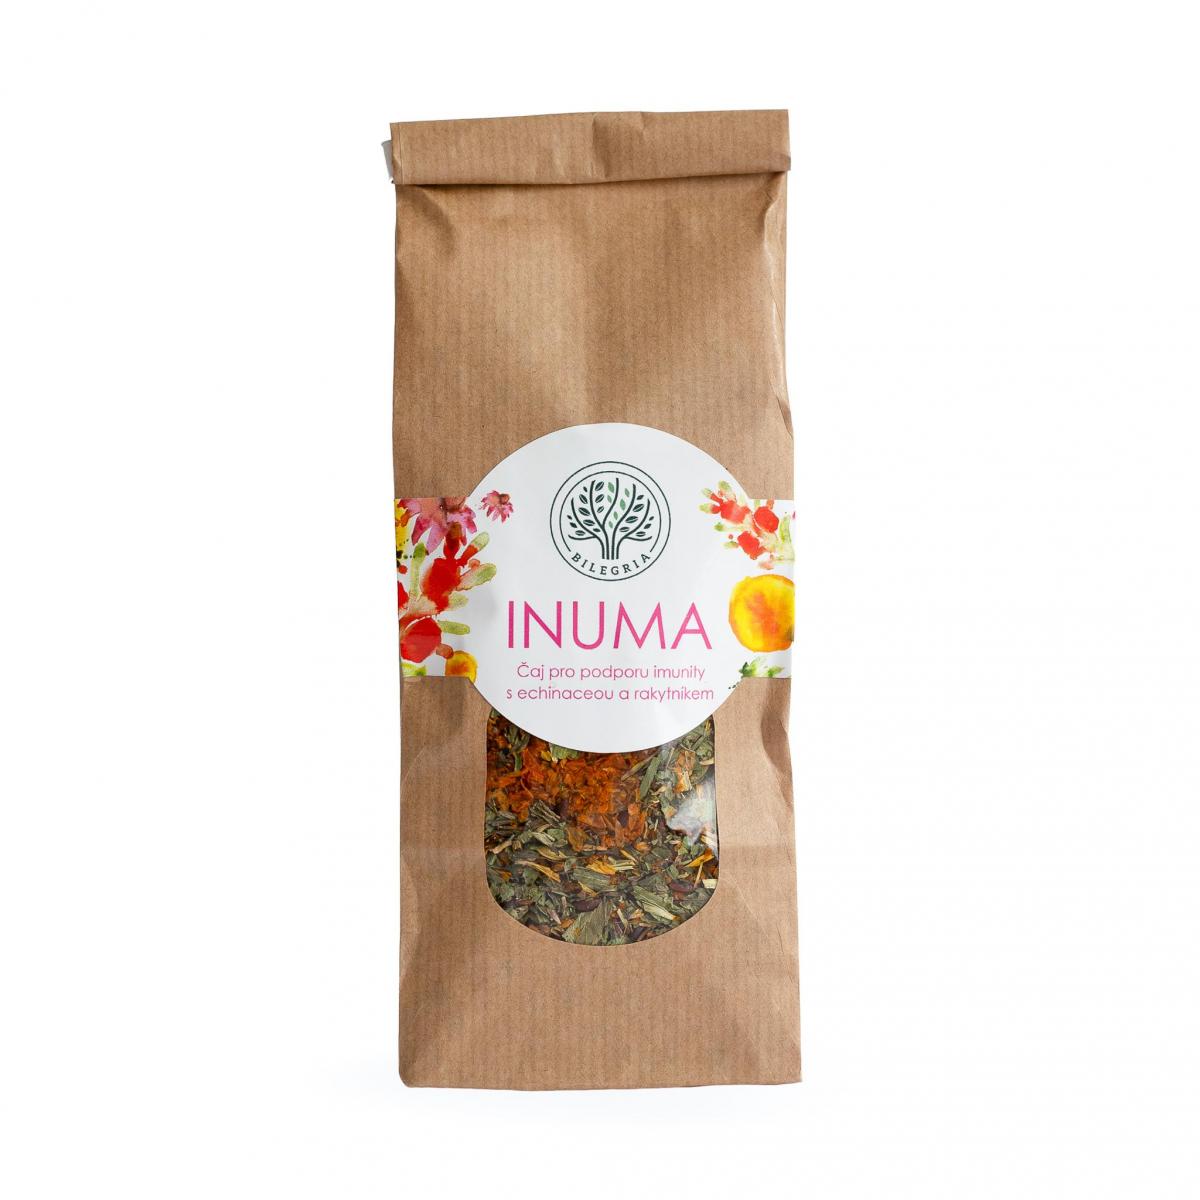 INUMA - sypaná bylinná čajová směs pro podporu imunitního systému a obranyschopnosti organismu, 50 g